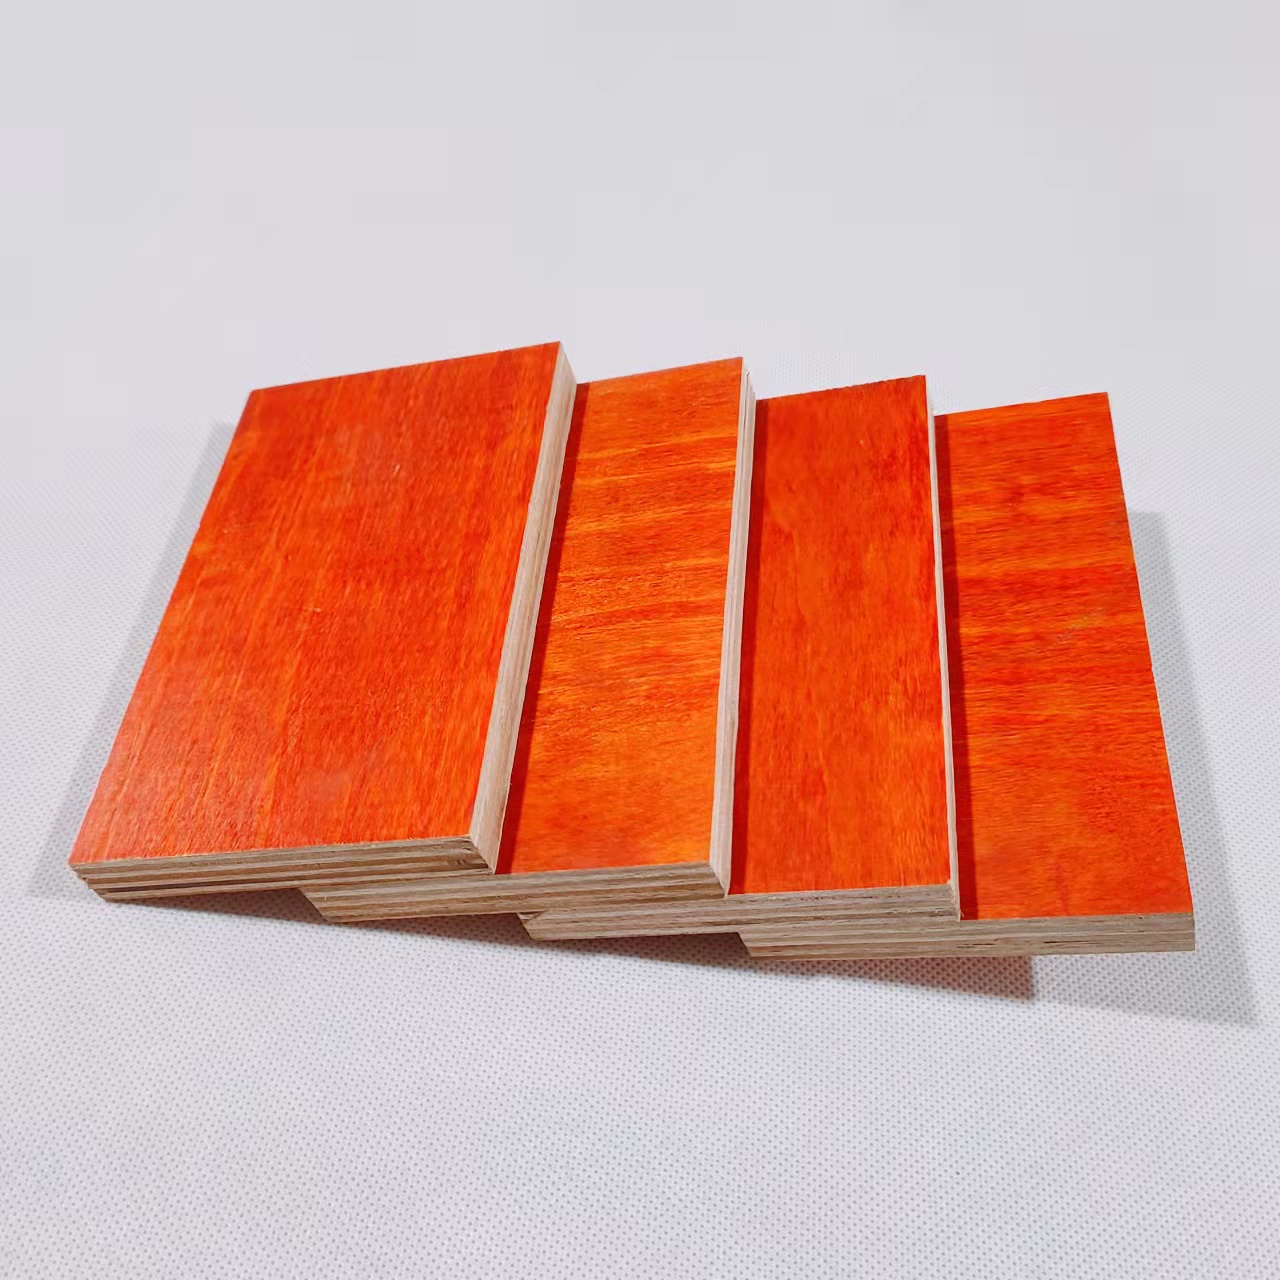 לוח פורניר בצבע אדום באיכות מעולה עם חומר אורן ואקליפטוס